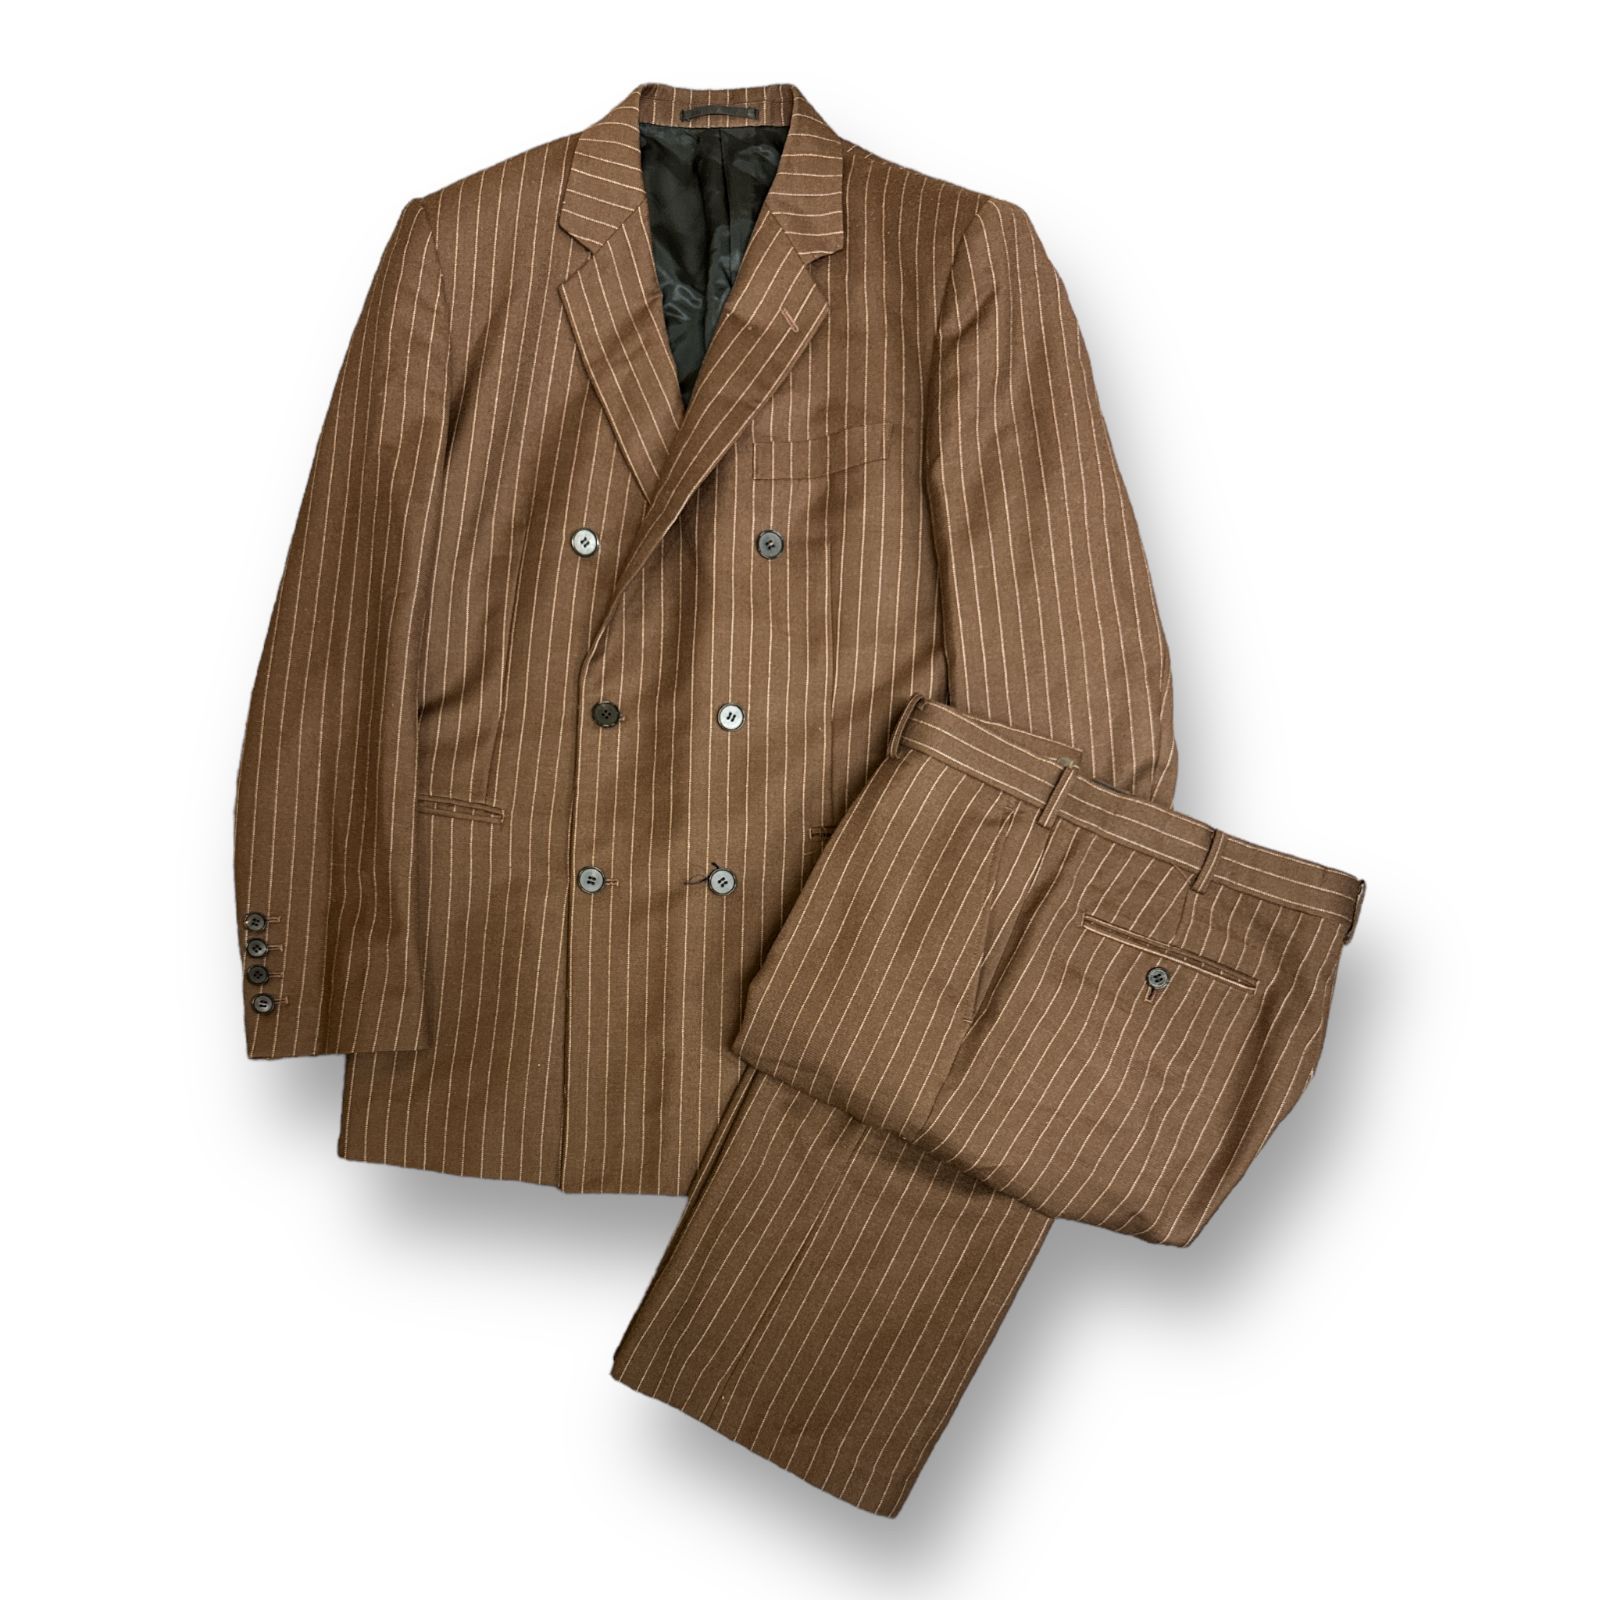 定価130900円 LITTLEBIG 21AW 6B Double Breasted Jacket Tucked Flare Trousers  set up ダブルブレステッドジャケット セットアップ スーツ リトルビッグ 48 59610A 59611A4 - メルカリ